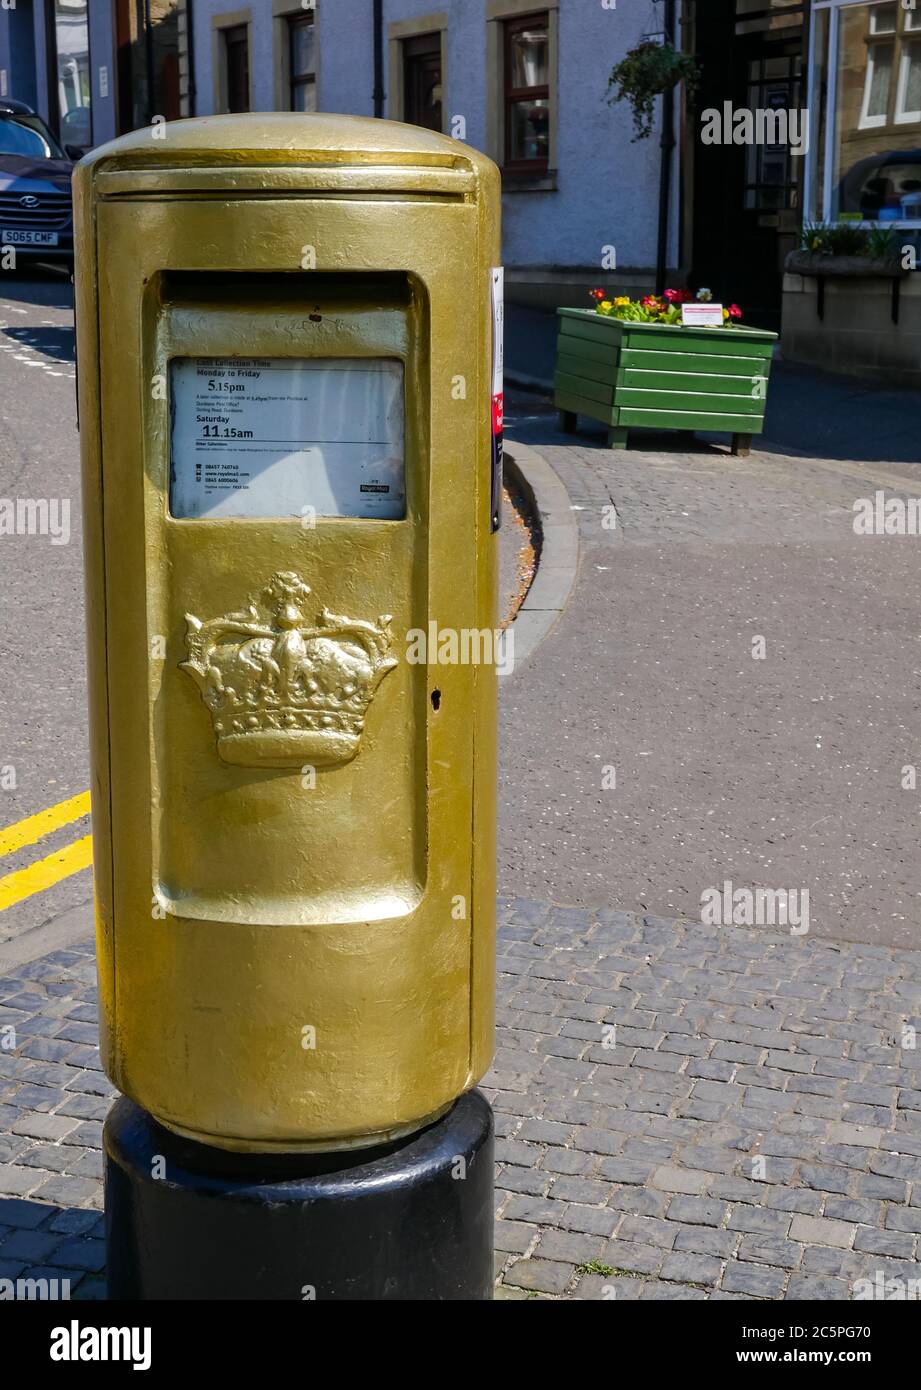 La boîte postale peinte en or célèbre la victoire olympique d'Andy Murray, Dunblane, dans le Perthshire, en Écosse, au Royaume-Uni Banque D'Images